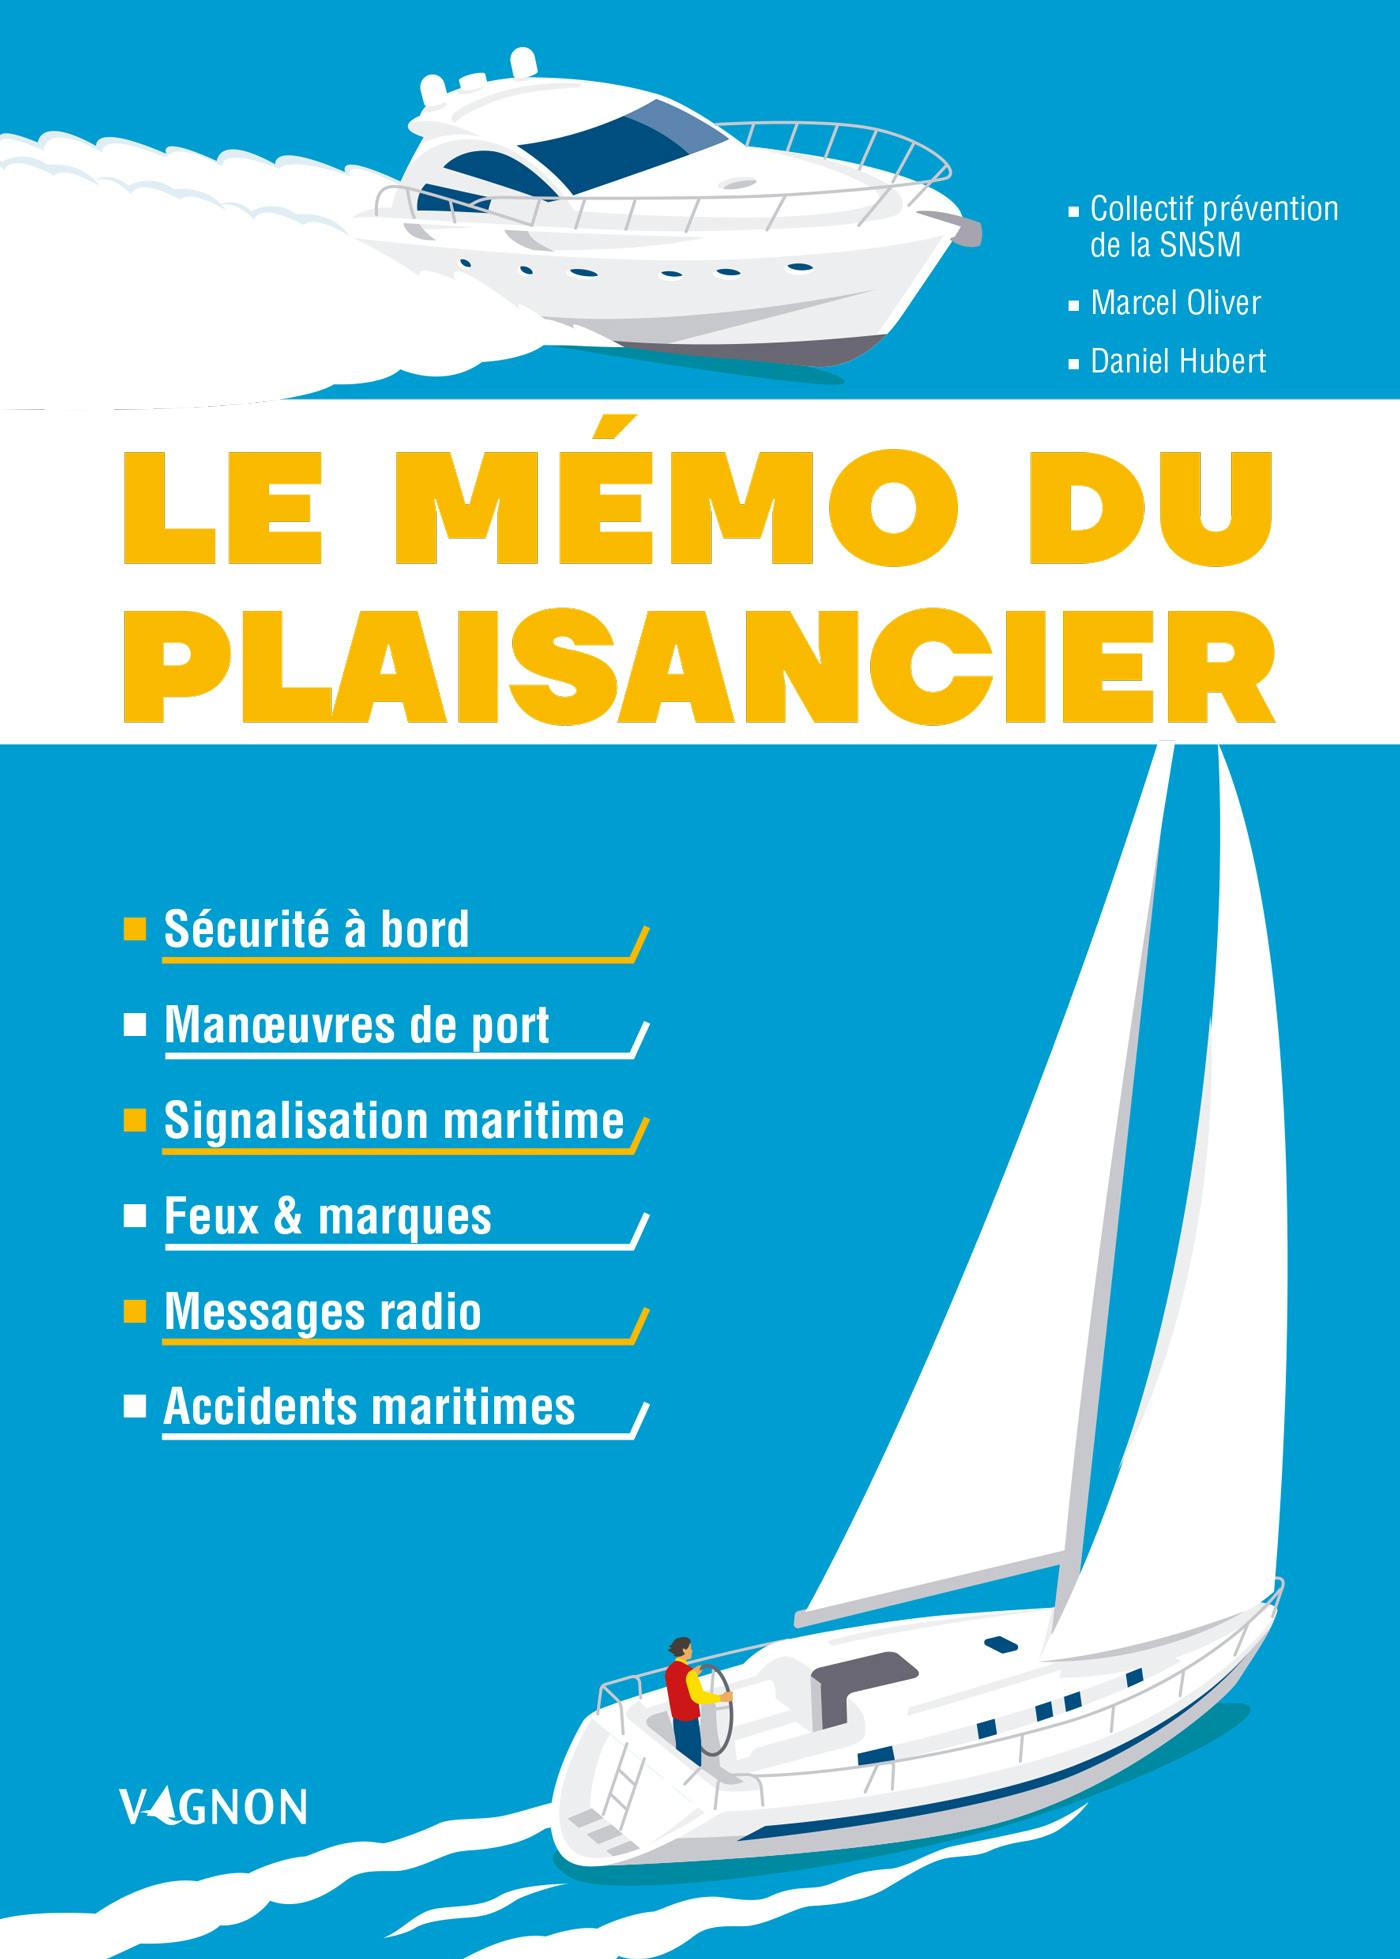 Le mémo du plaisancier : Manœuvres de port - Signalisation maritime - Feux et marques des bateaux - Messages radio - Accidents maritimes - Sécurité à bord | SNSM